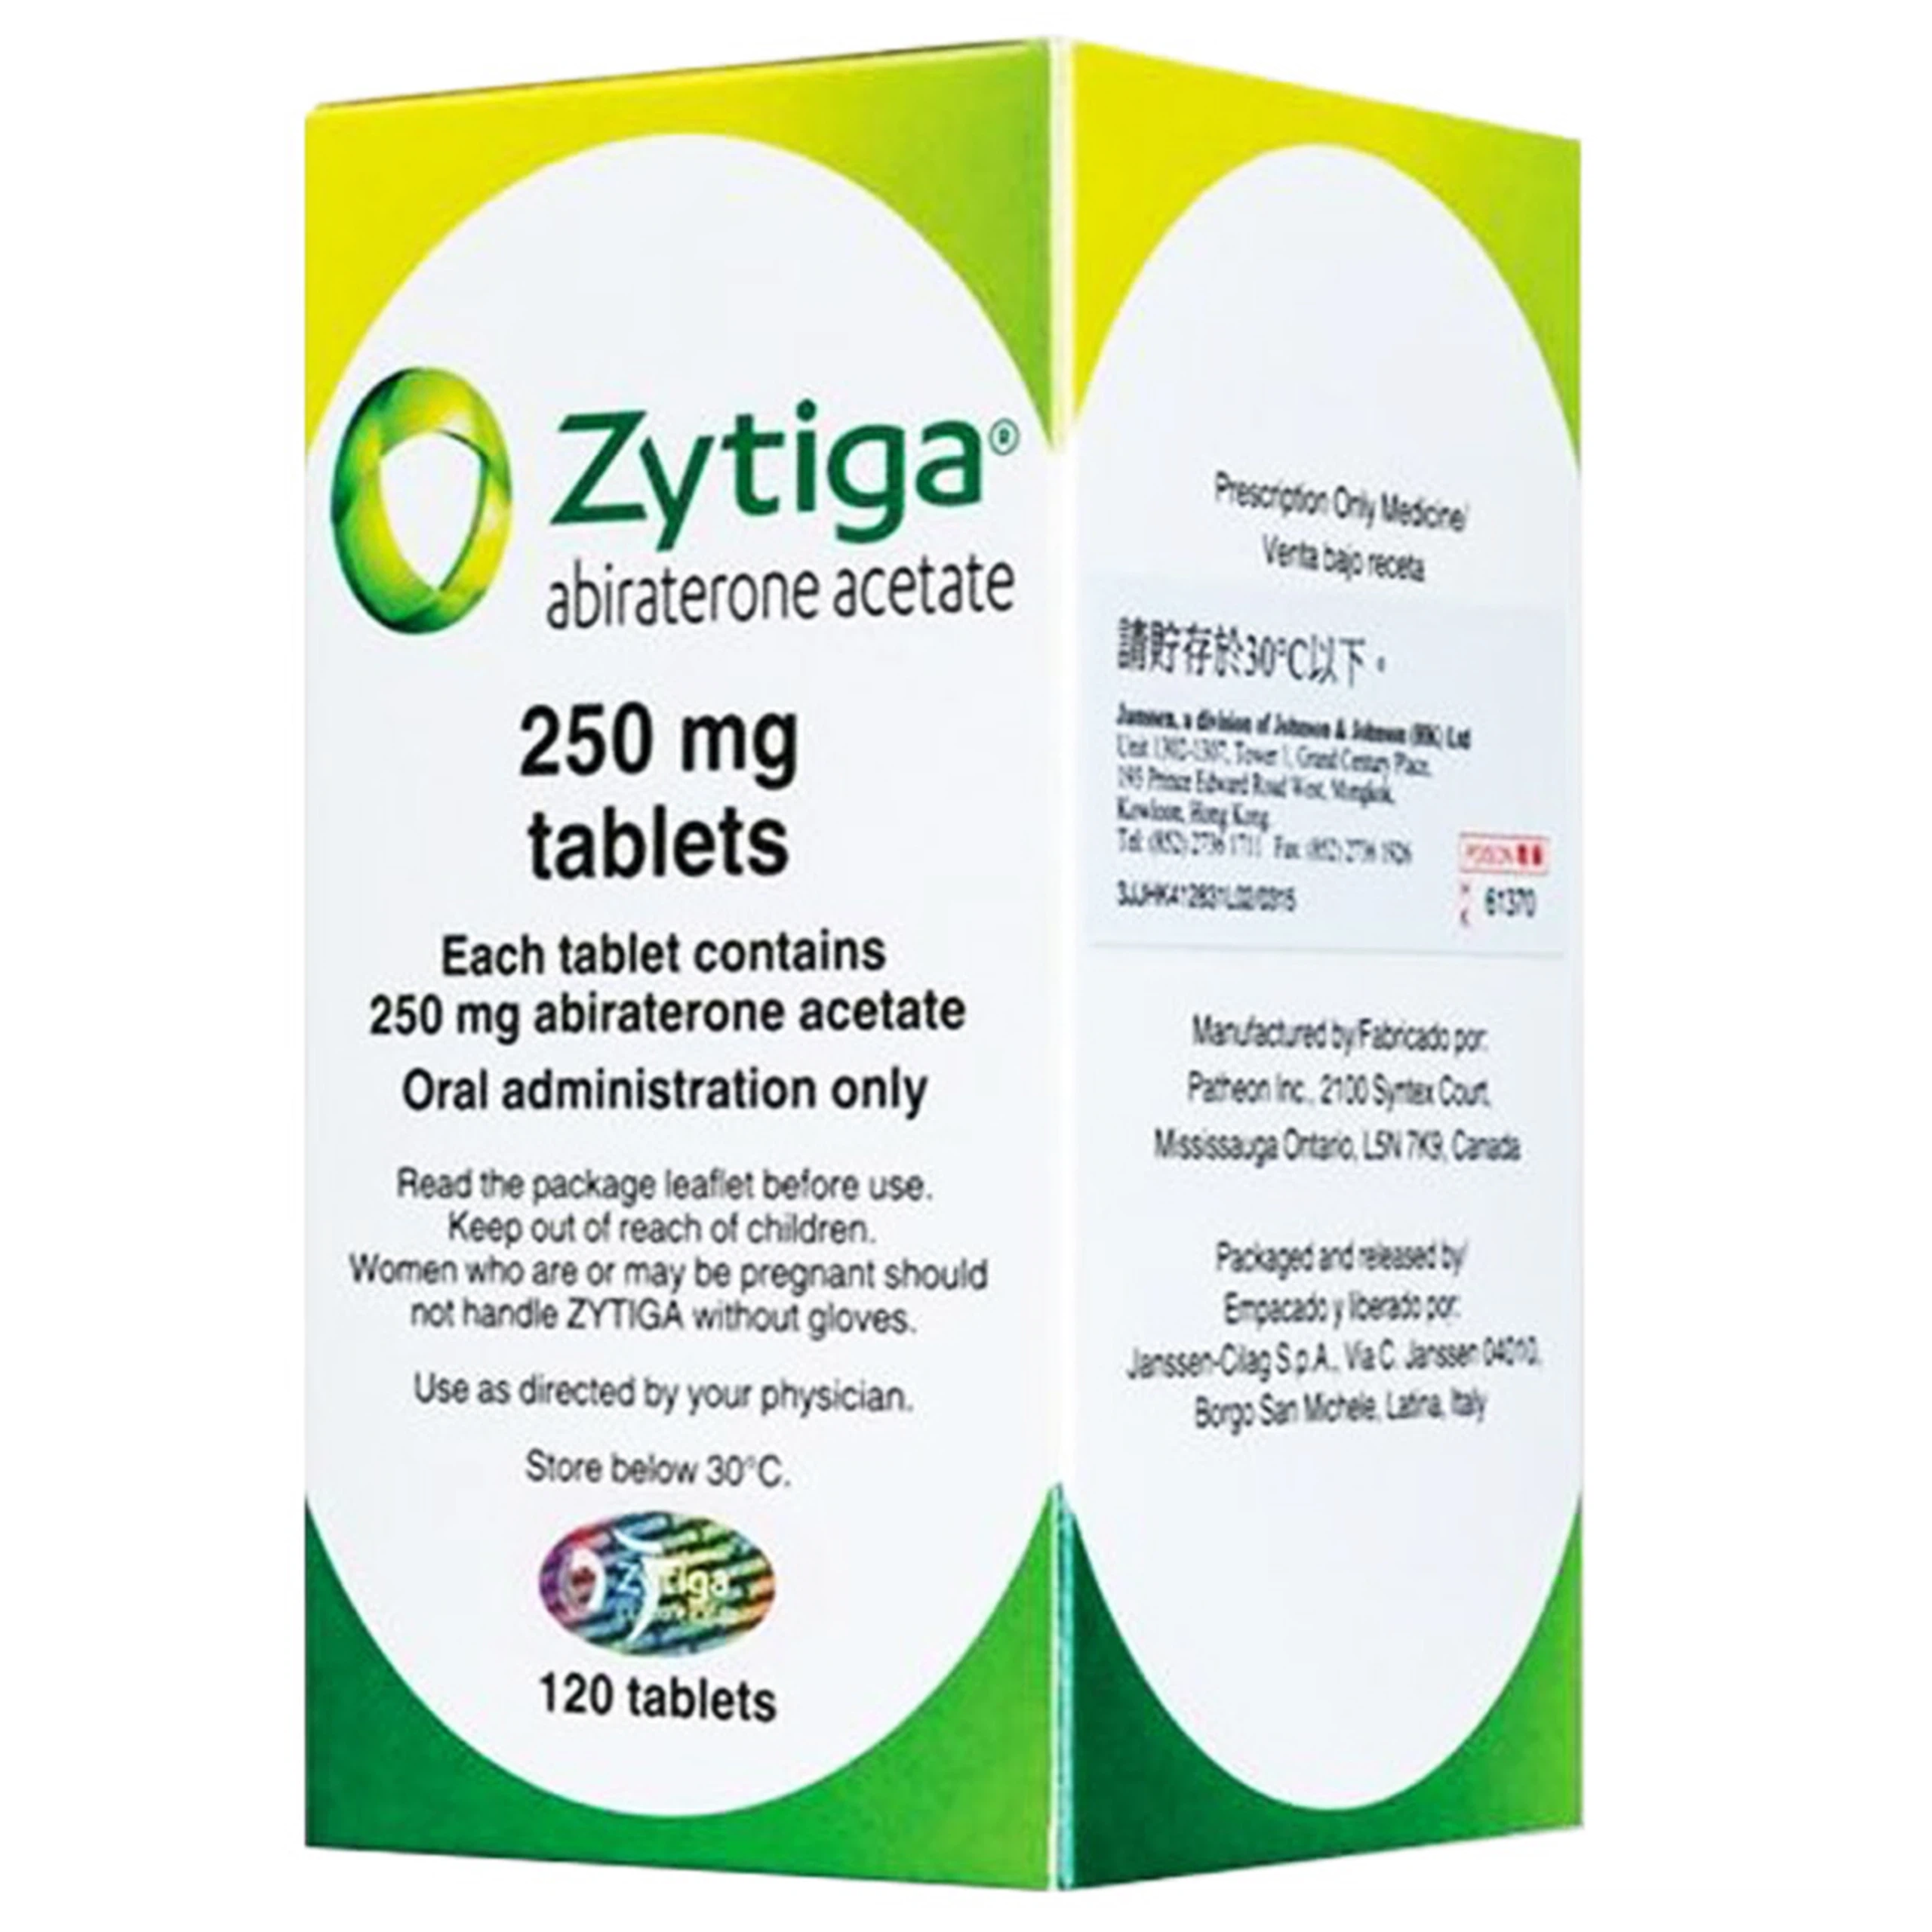 Thuốc Zytiga 250mg Janssen điều trị ung thư tuyến tiền liệt (120 viên)